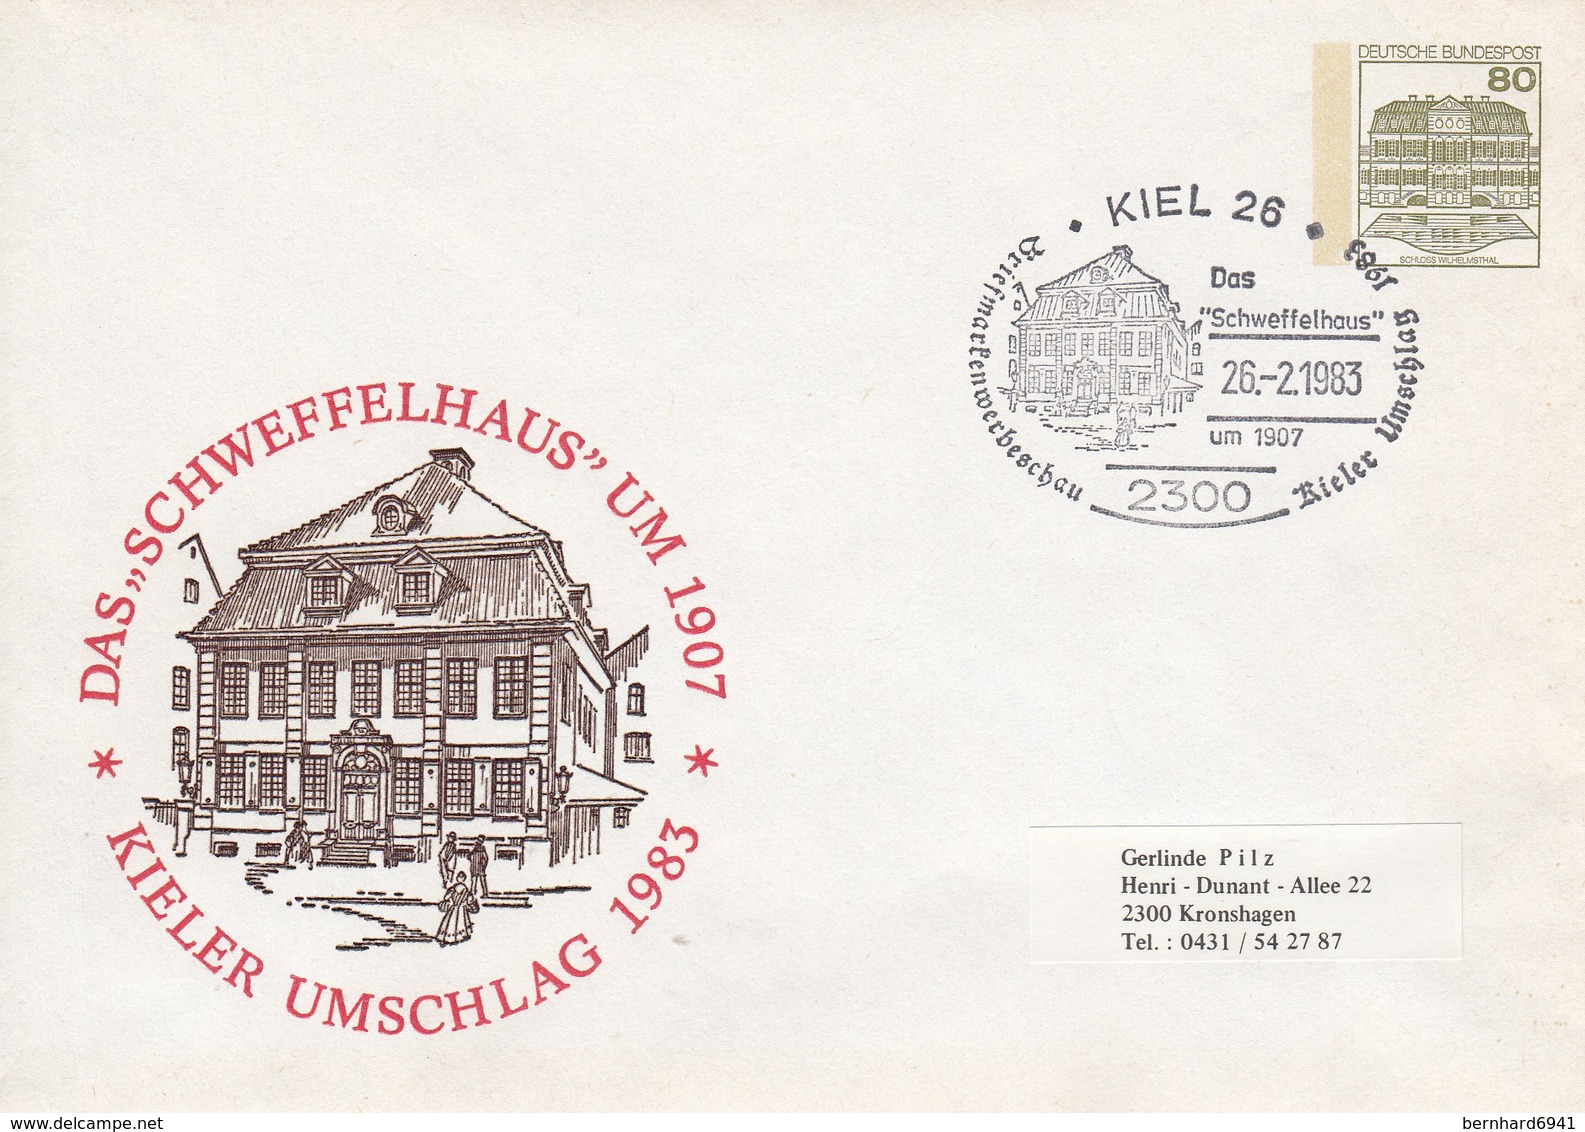 PU 117/112  Kieler Umschlag 1983 - Das Schweffelhaus Um 1907, Kiel 26 - Privatumschläge - Gebraucht